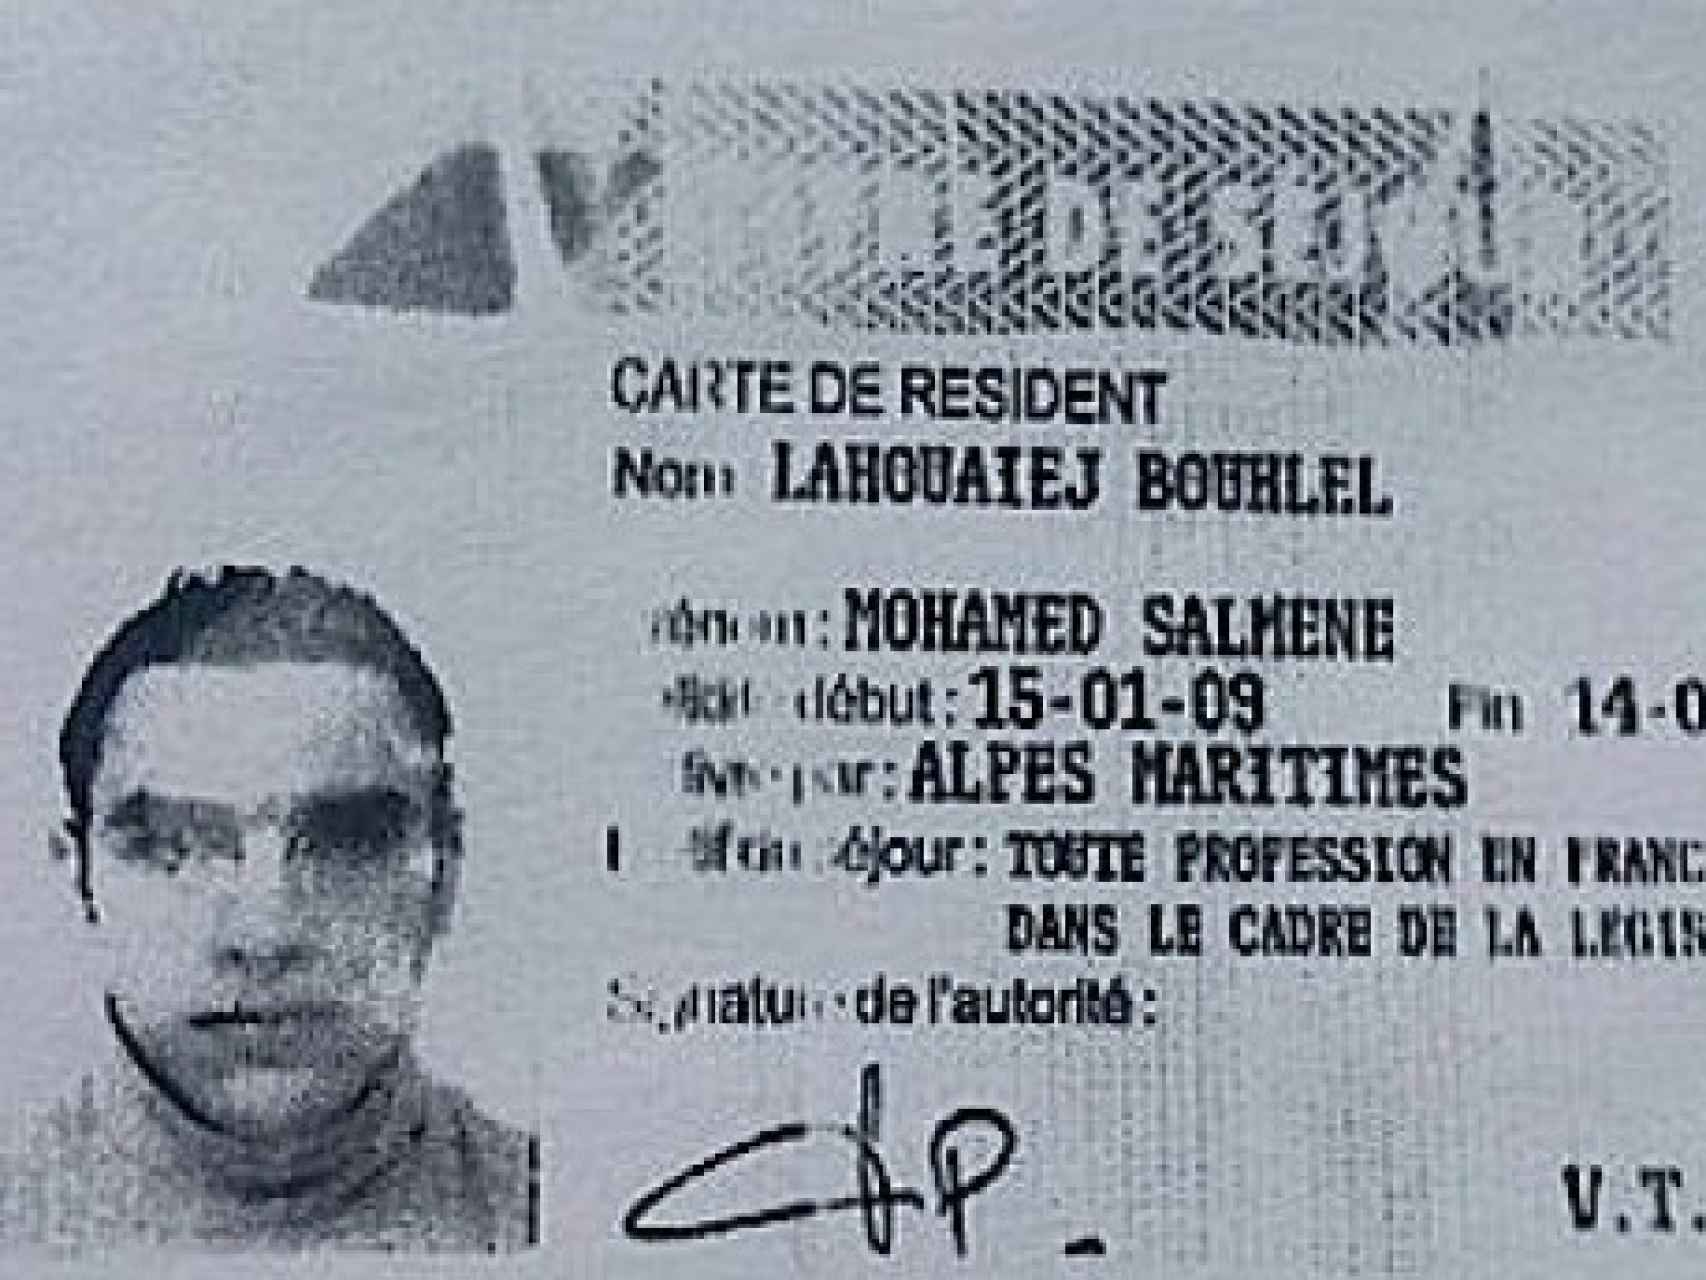 Carné de residente de Mohamed Lahouaiej Bouhlel, identificado como autor del atentado en Niza.